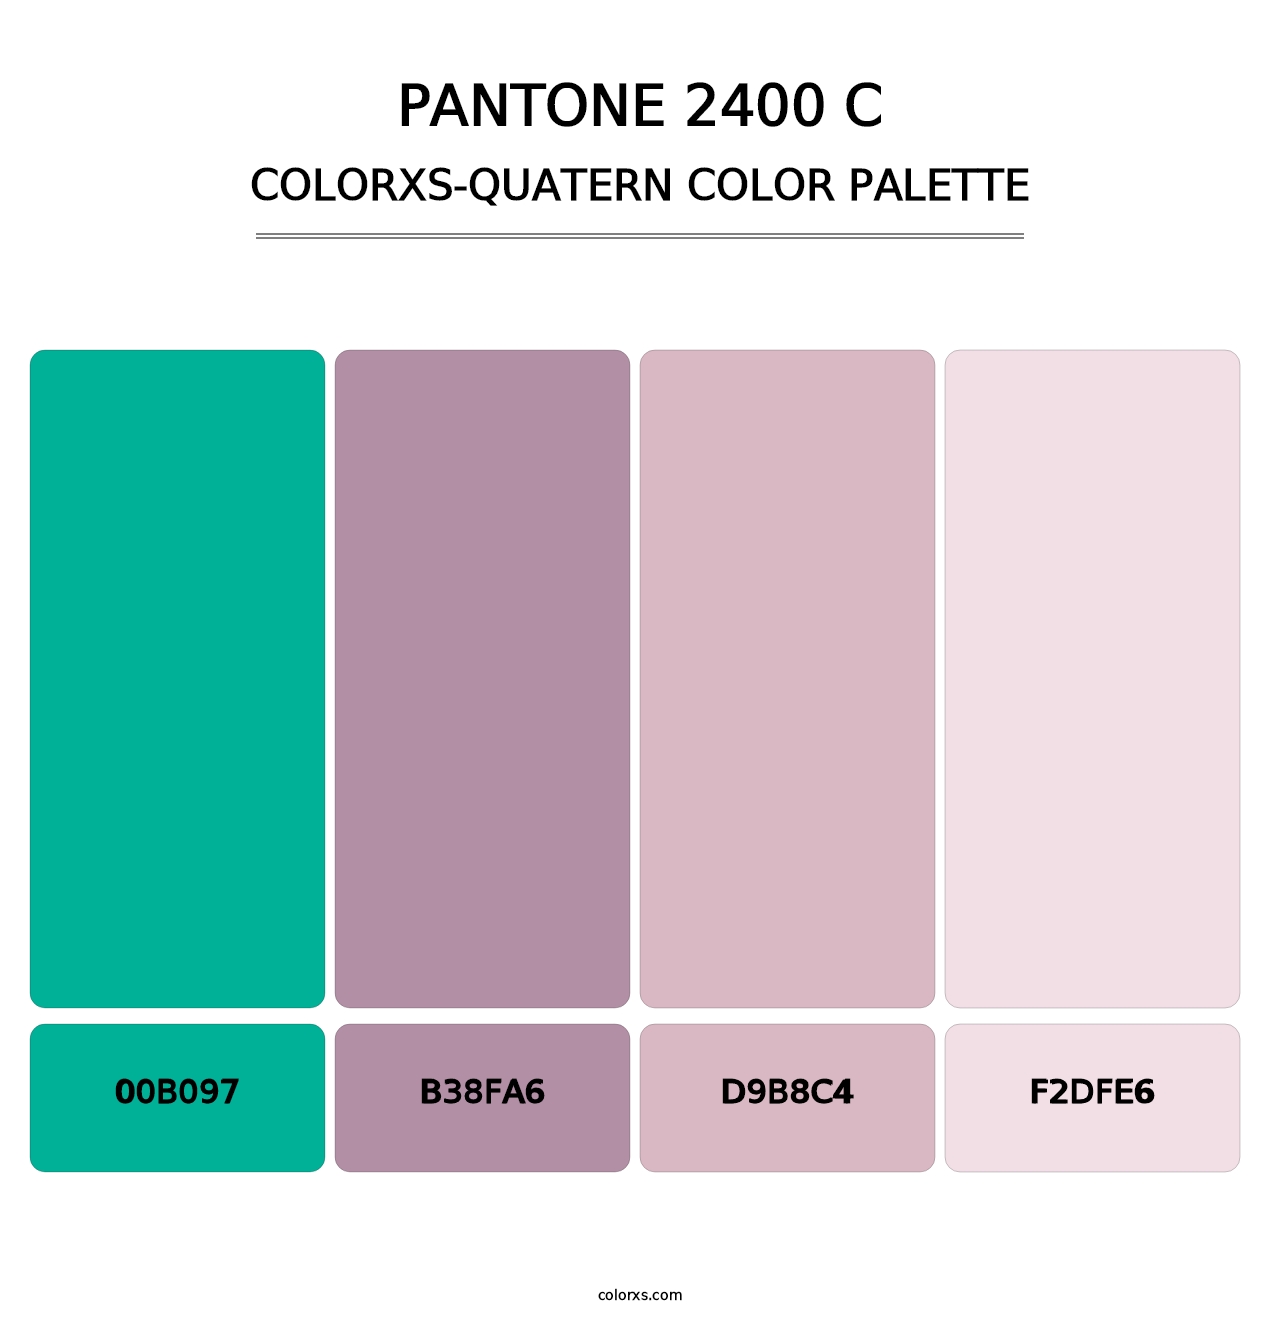 PANTONE 2400 C - Colorxs Quatern Palette